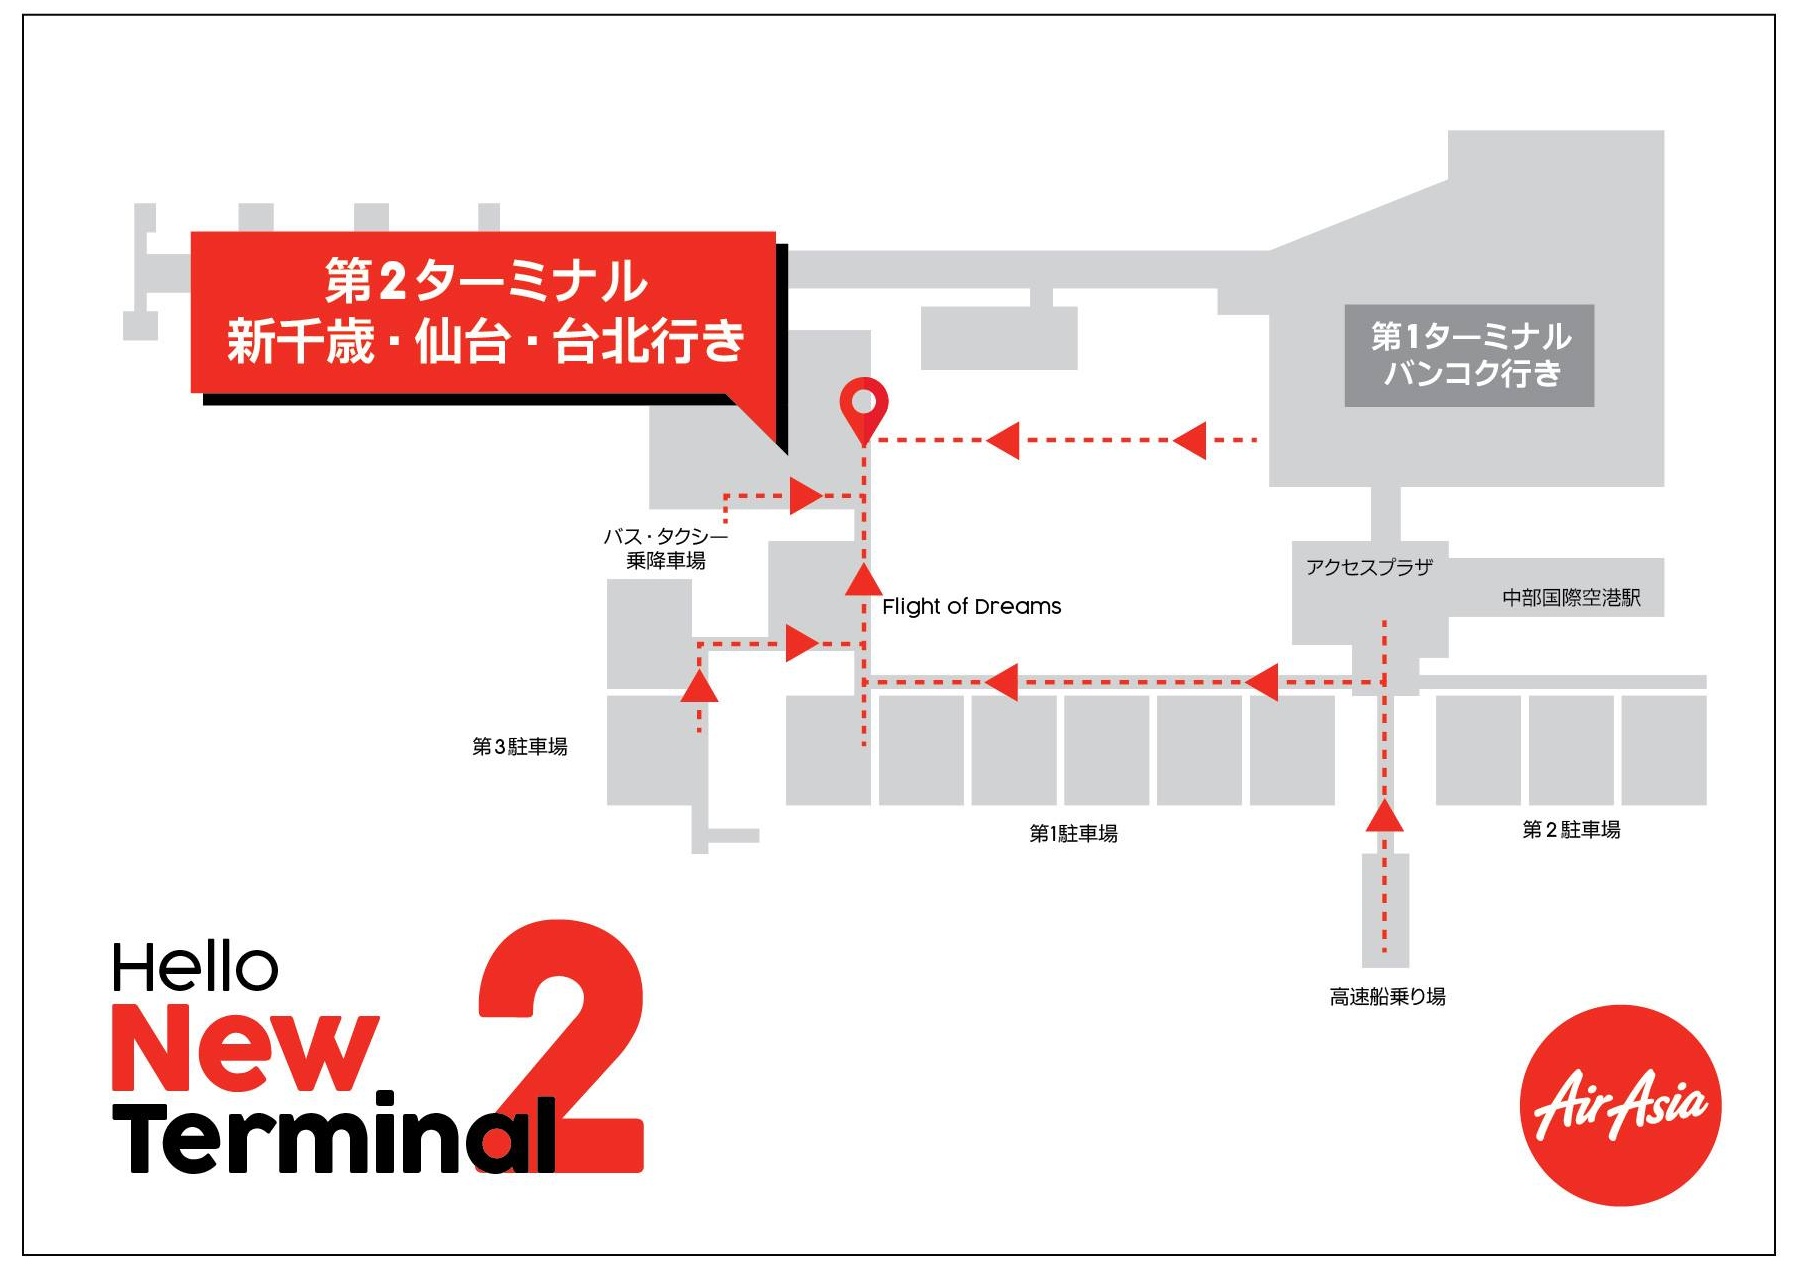 エアアジア ジャパンは中部国際空港第2ターミナルへ移転します Airasia Newsroom